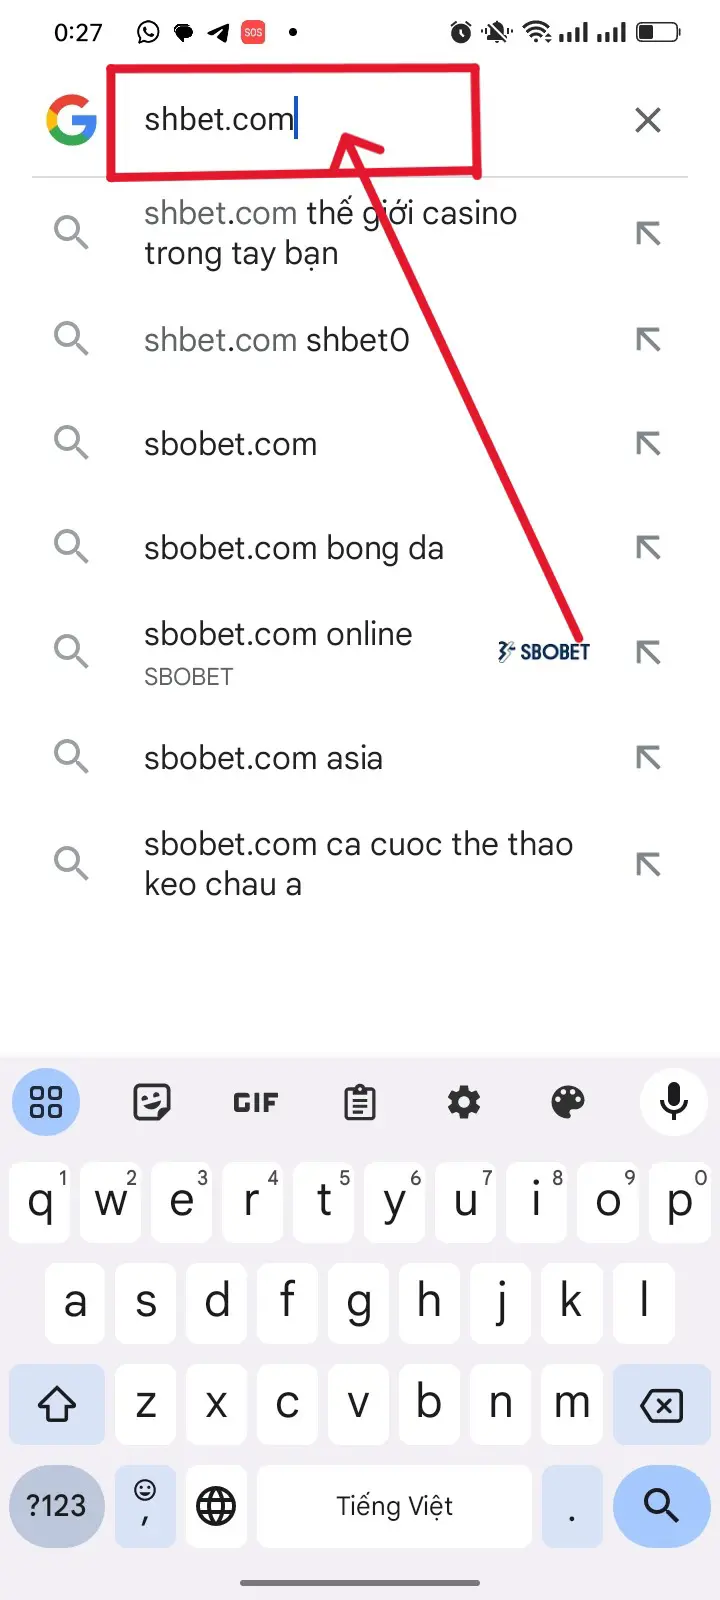 Bước 1: Tìm kiếm "SHBET.COM" tại "GOOGLE"